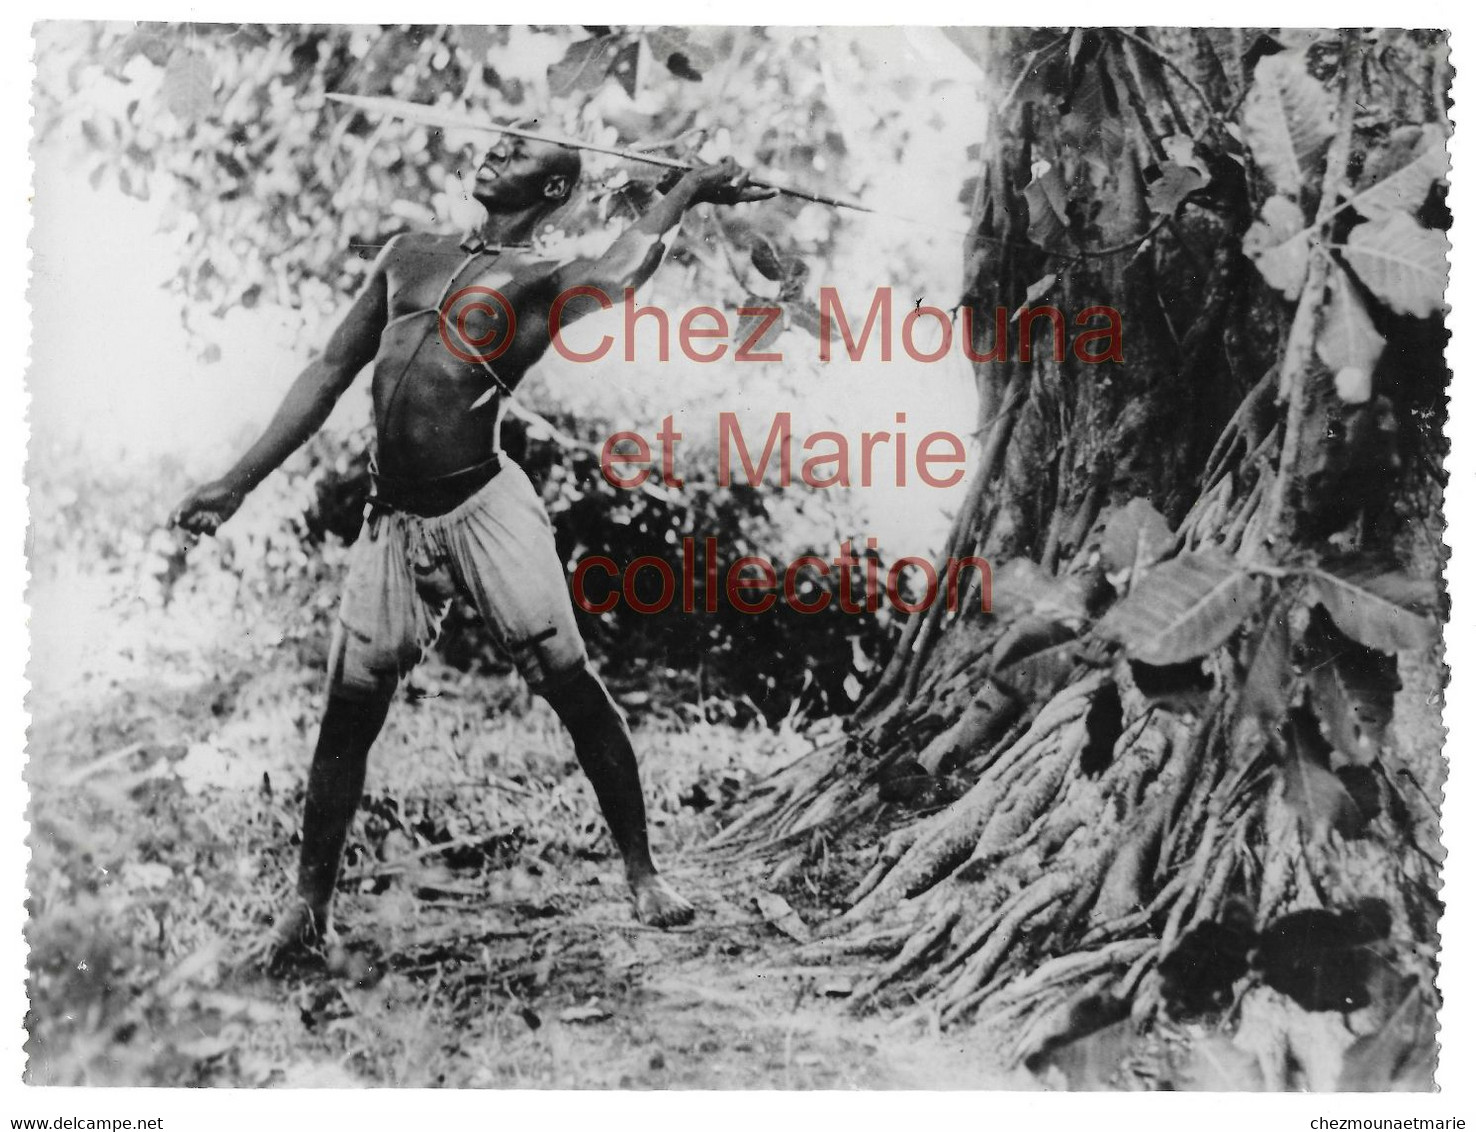 COTE D IVOIRE - INDIGENE ETHNIE HOMME NU CHASSEUR - PHOTO 24*18 CM AFRIQUE - Afrika